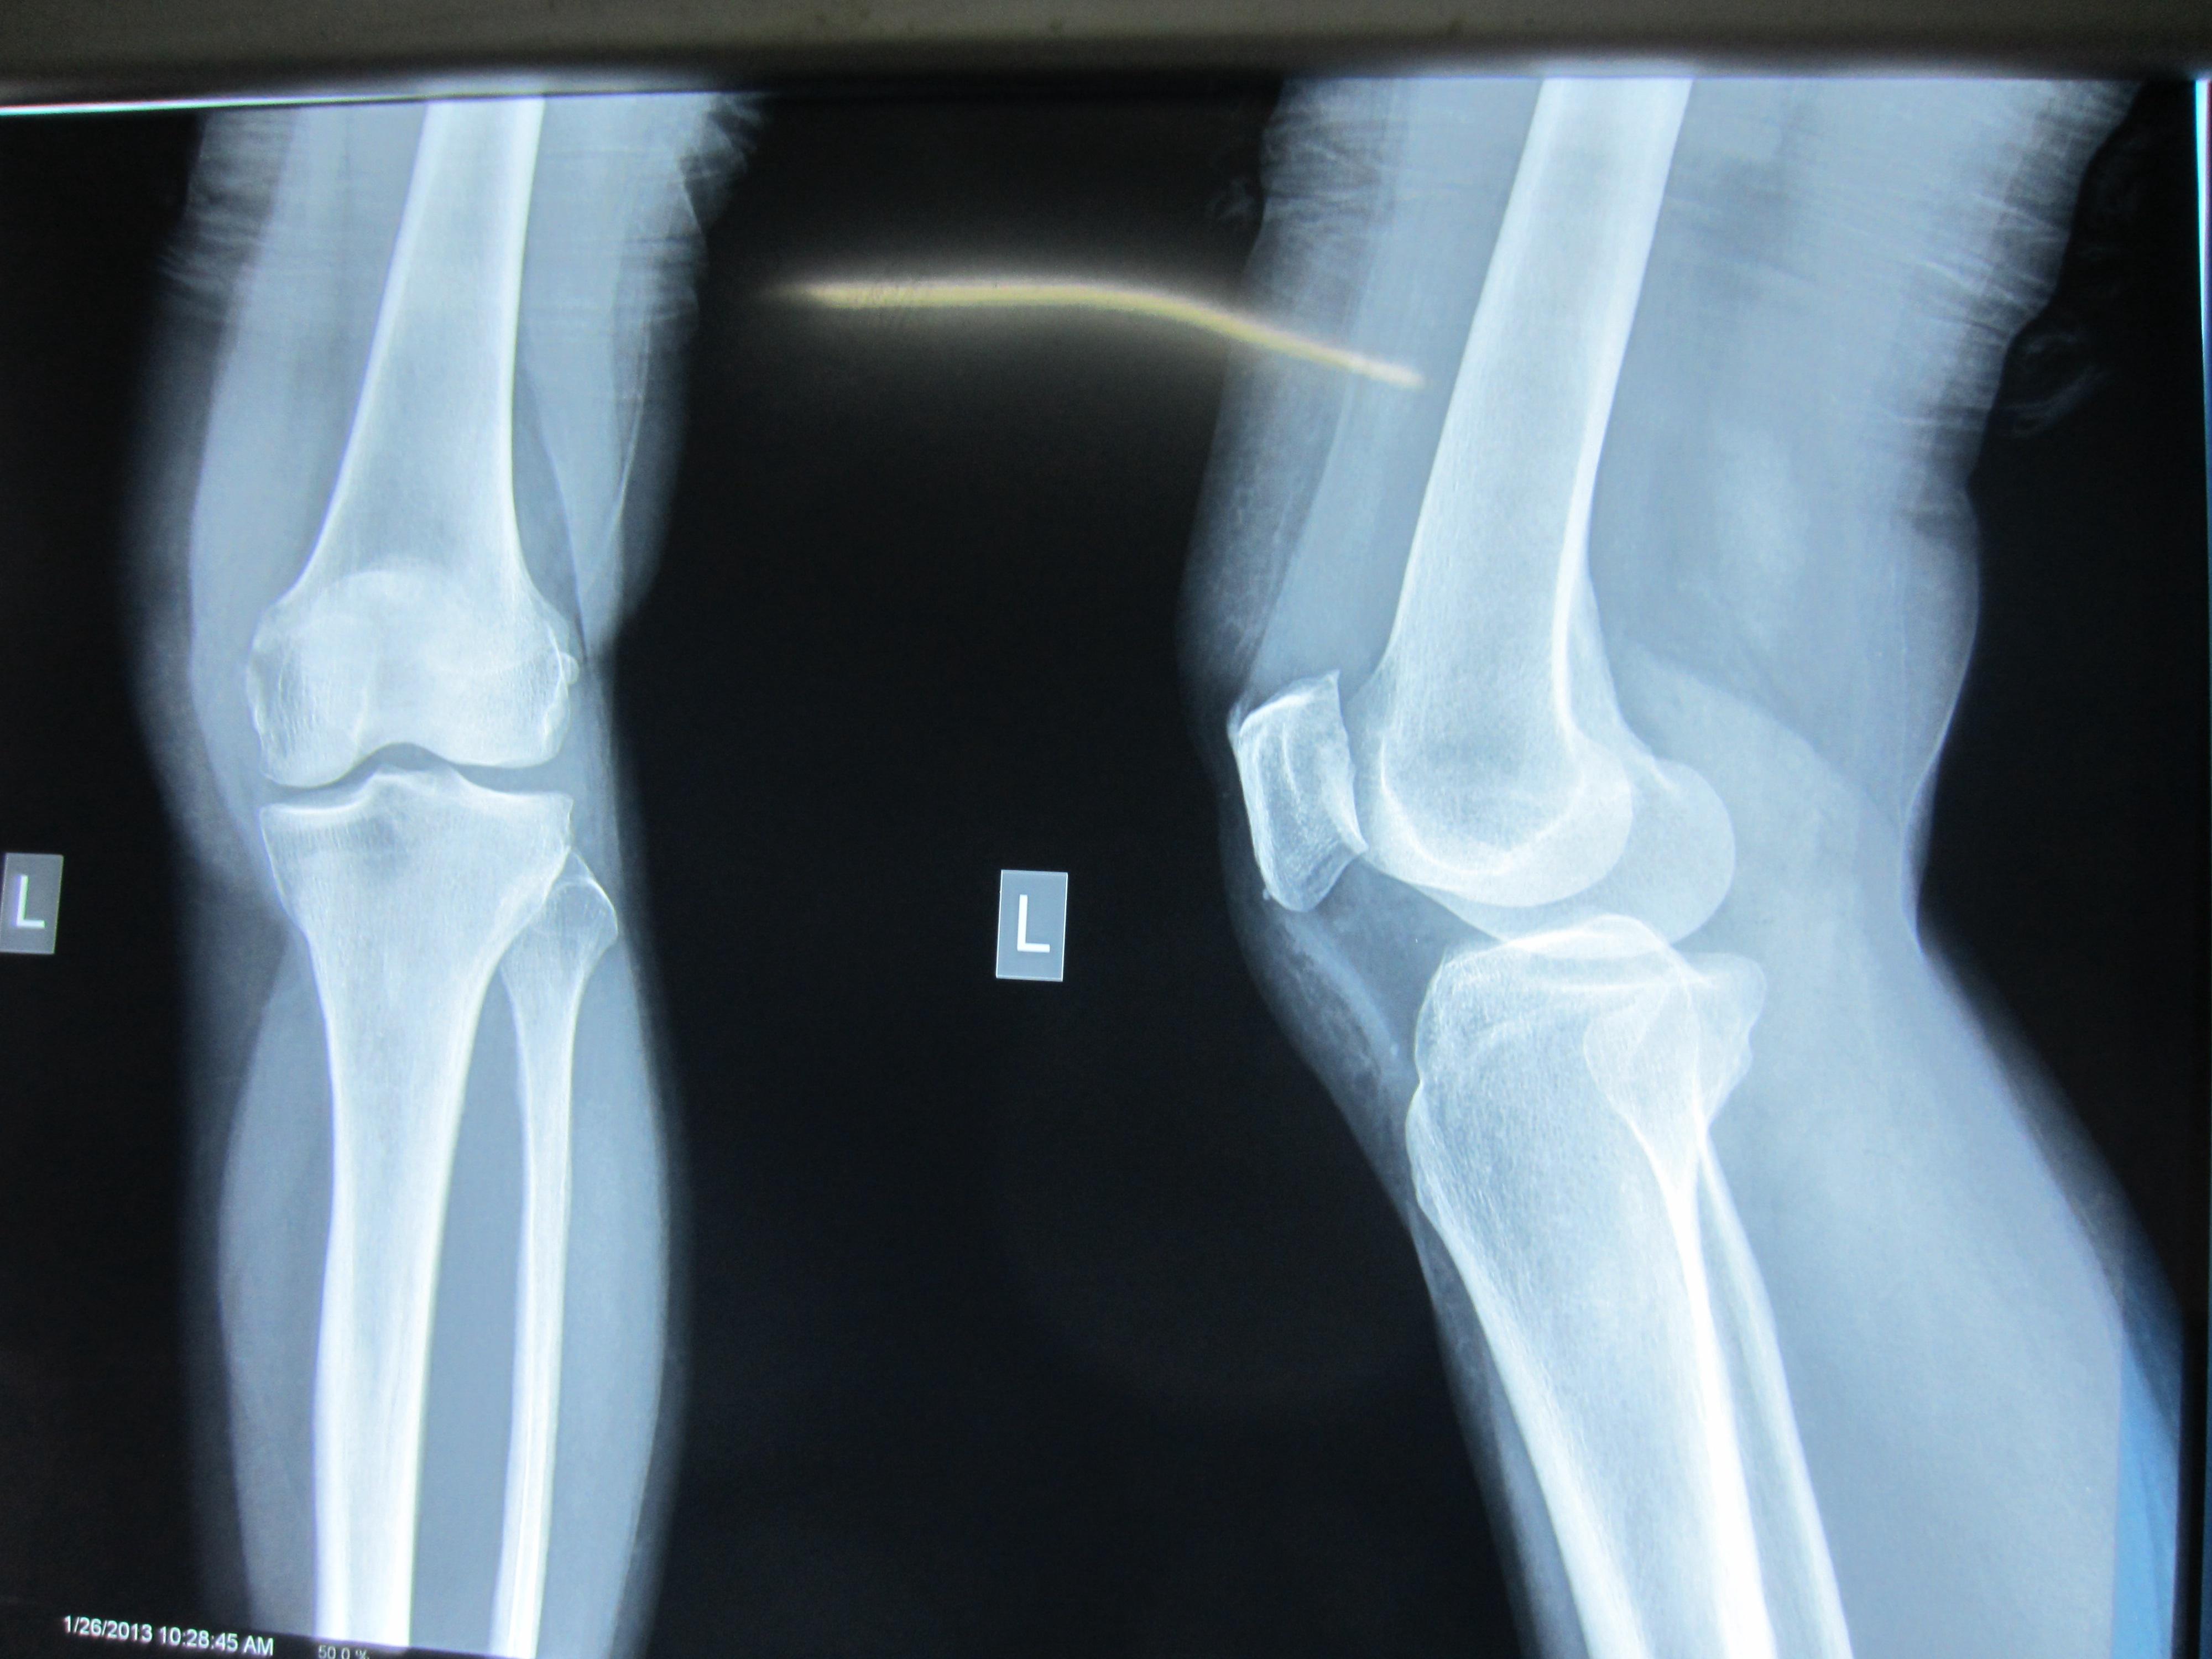 股骨髁骨折图片